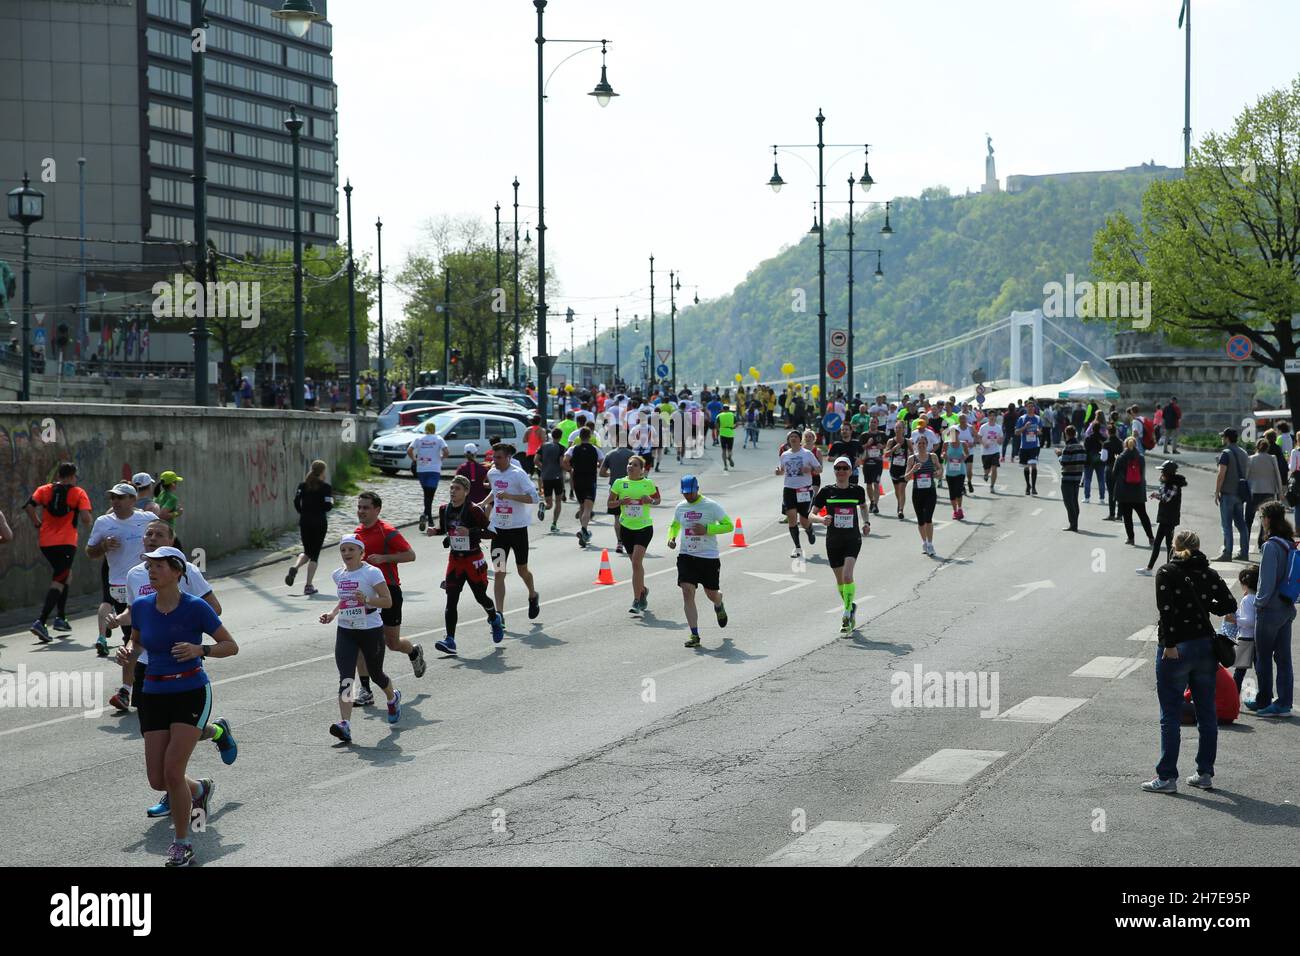 BUDAPEST, UNGARN - APRIL 9 2017: Nicht identifizierte Marathonläufer nehmen am 32nd Telekom Vivicitta Spring Half Budapest International Marathon in s Teil Stockfoto